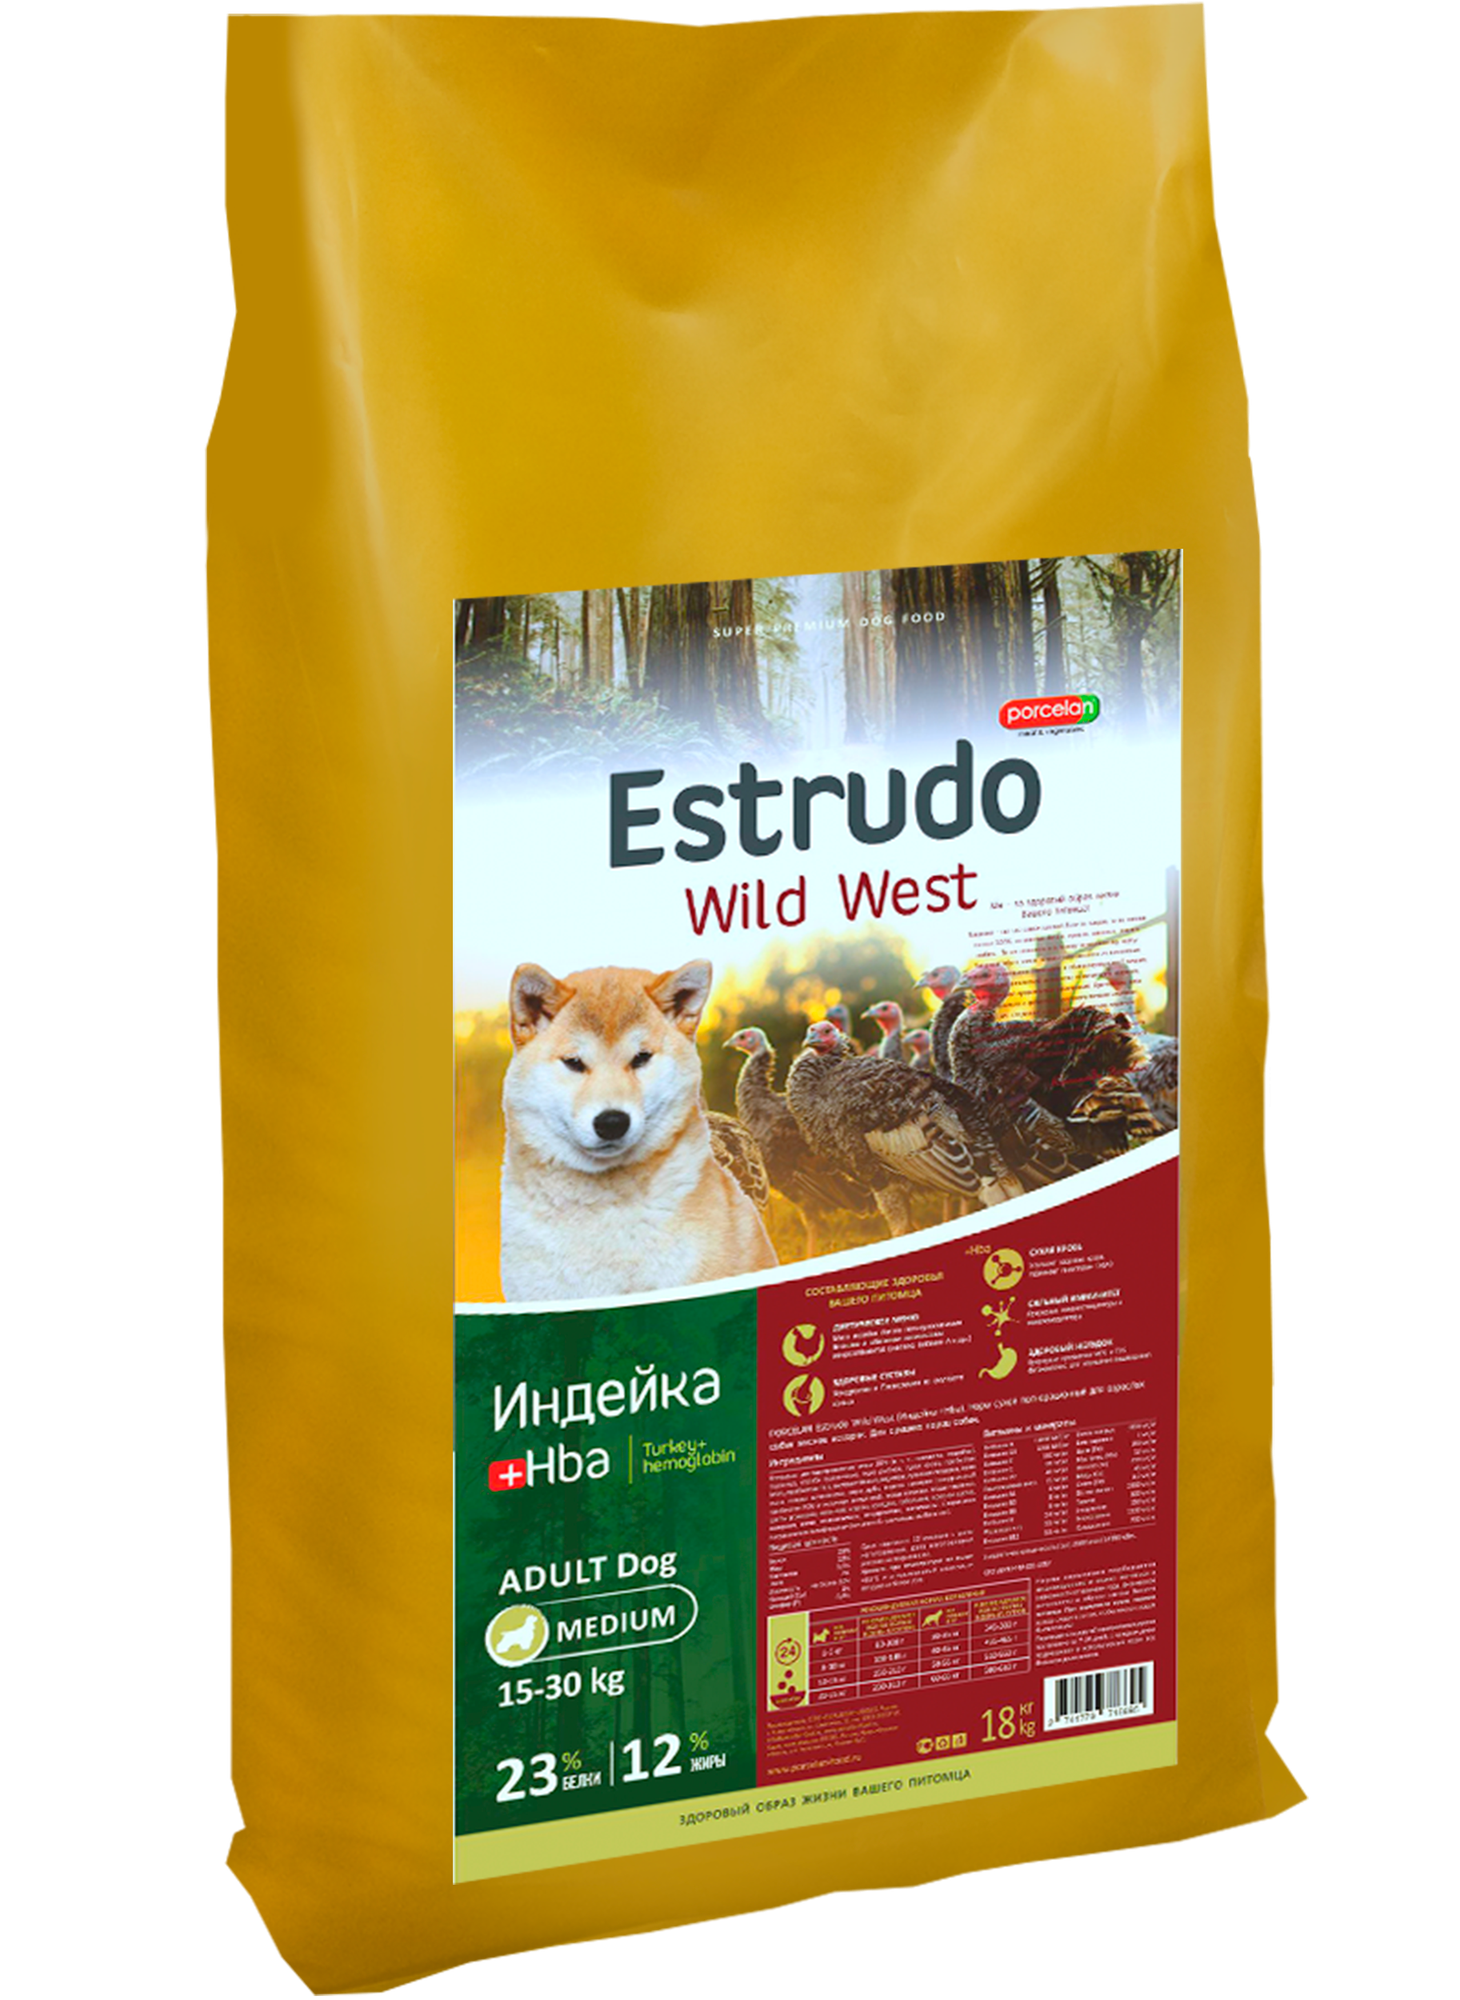 Сухой корм Estrudo Wild West (Индейка +Hba) д/взр. собак средних пород, 18 кг